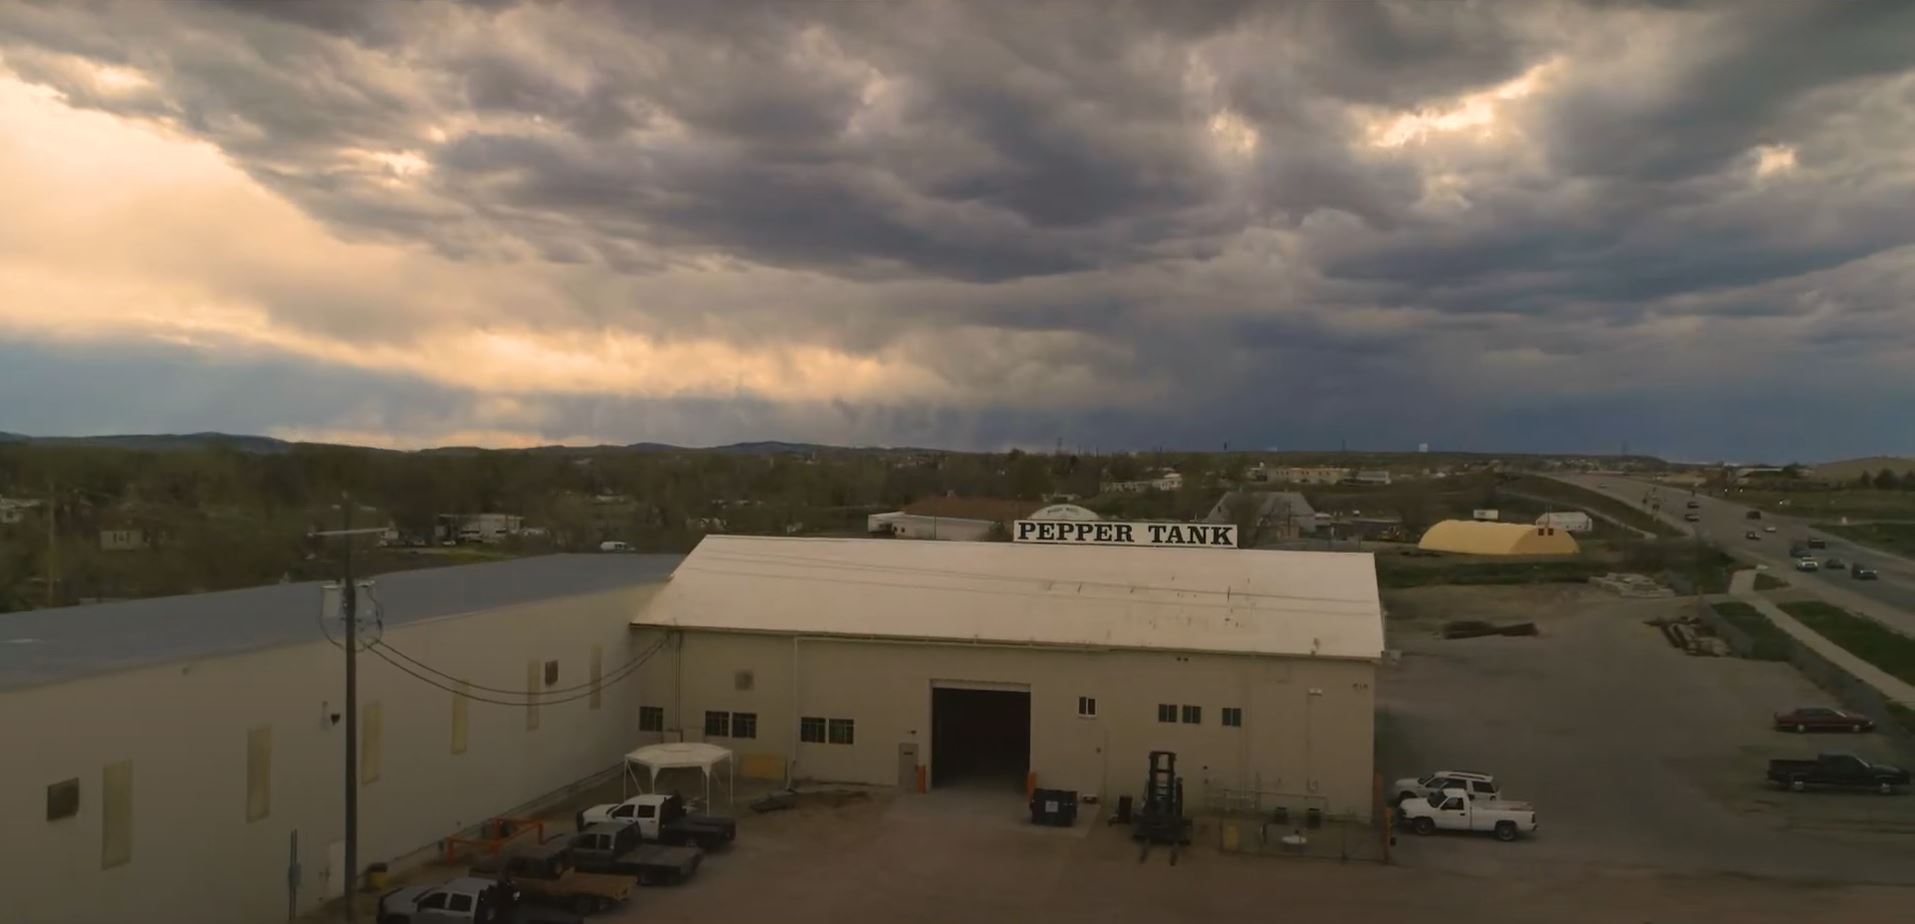 Pepper Tank - steel fabrication shop in Casper, Wyoming